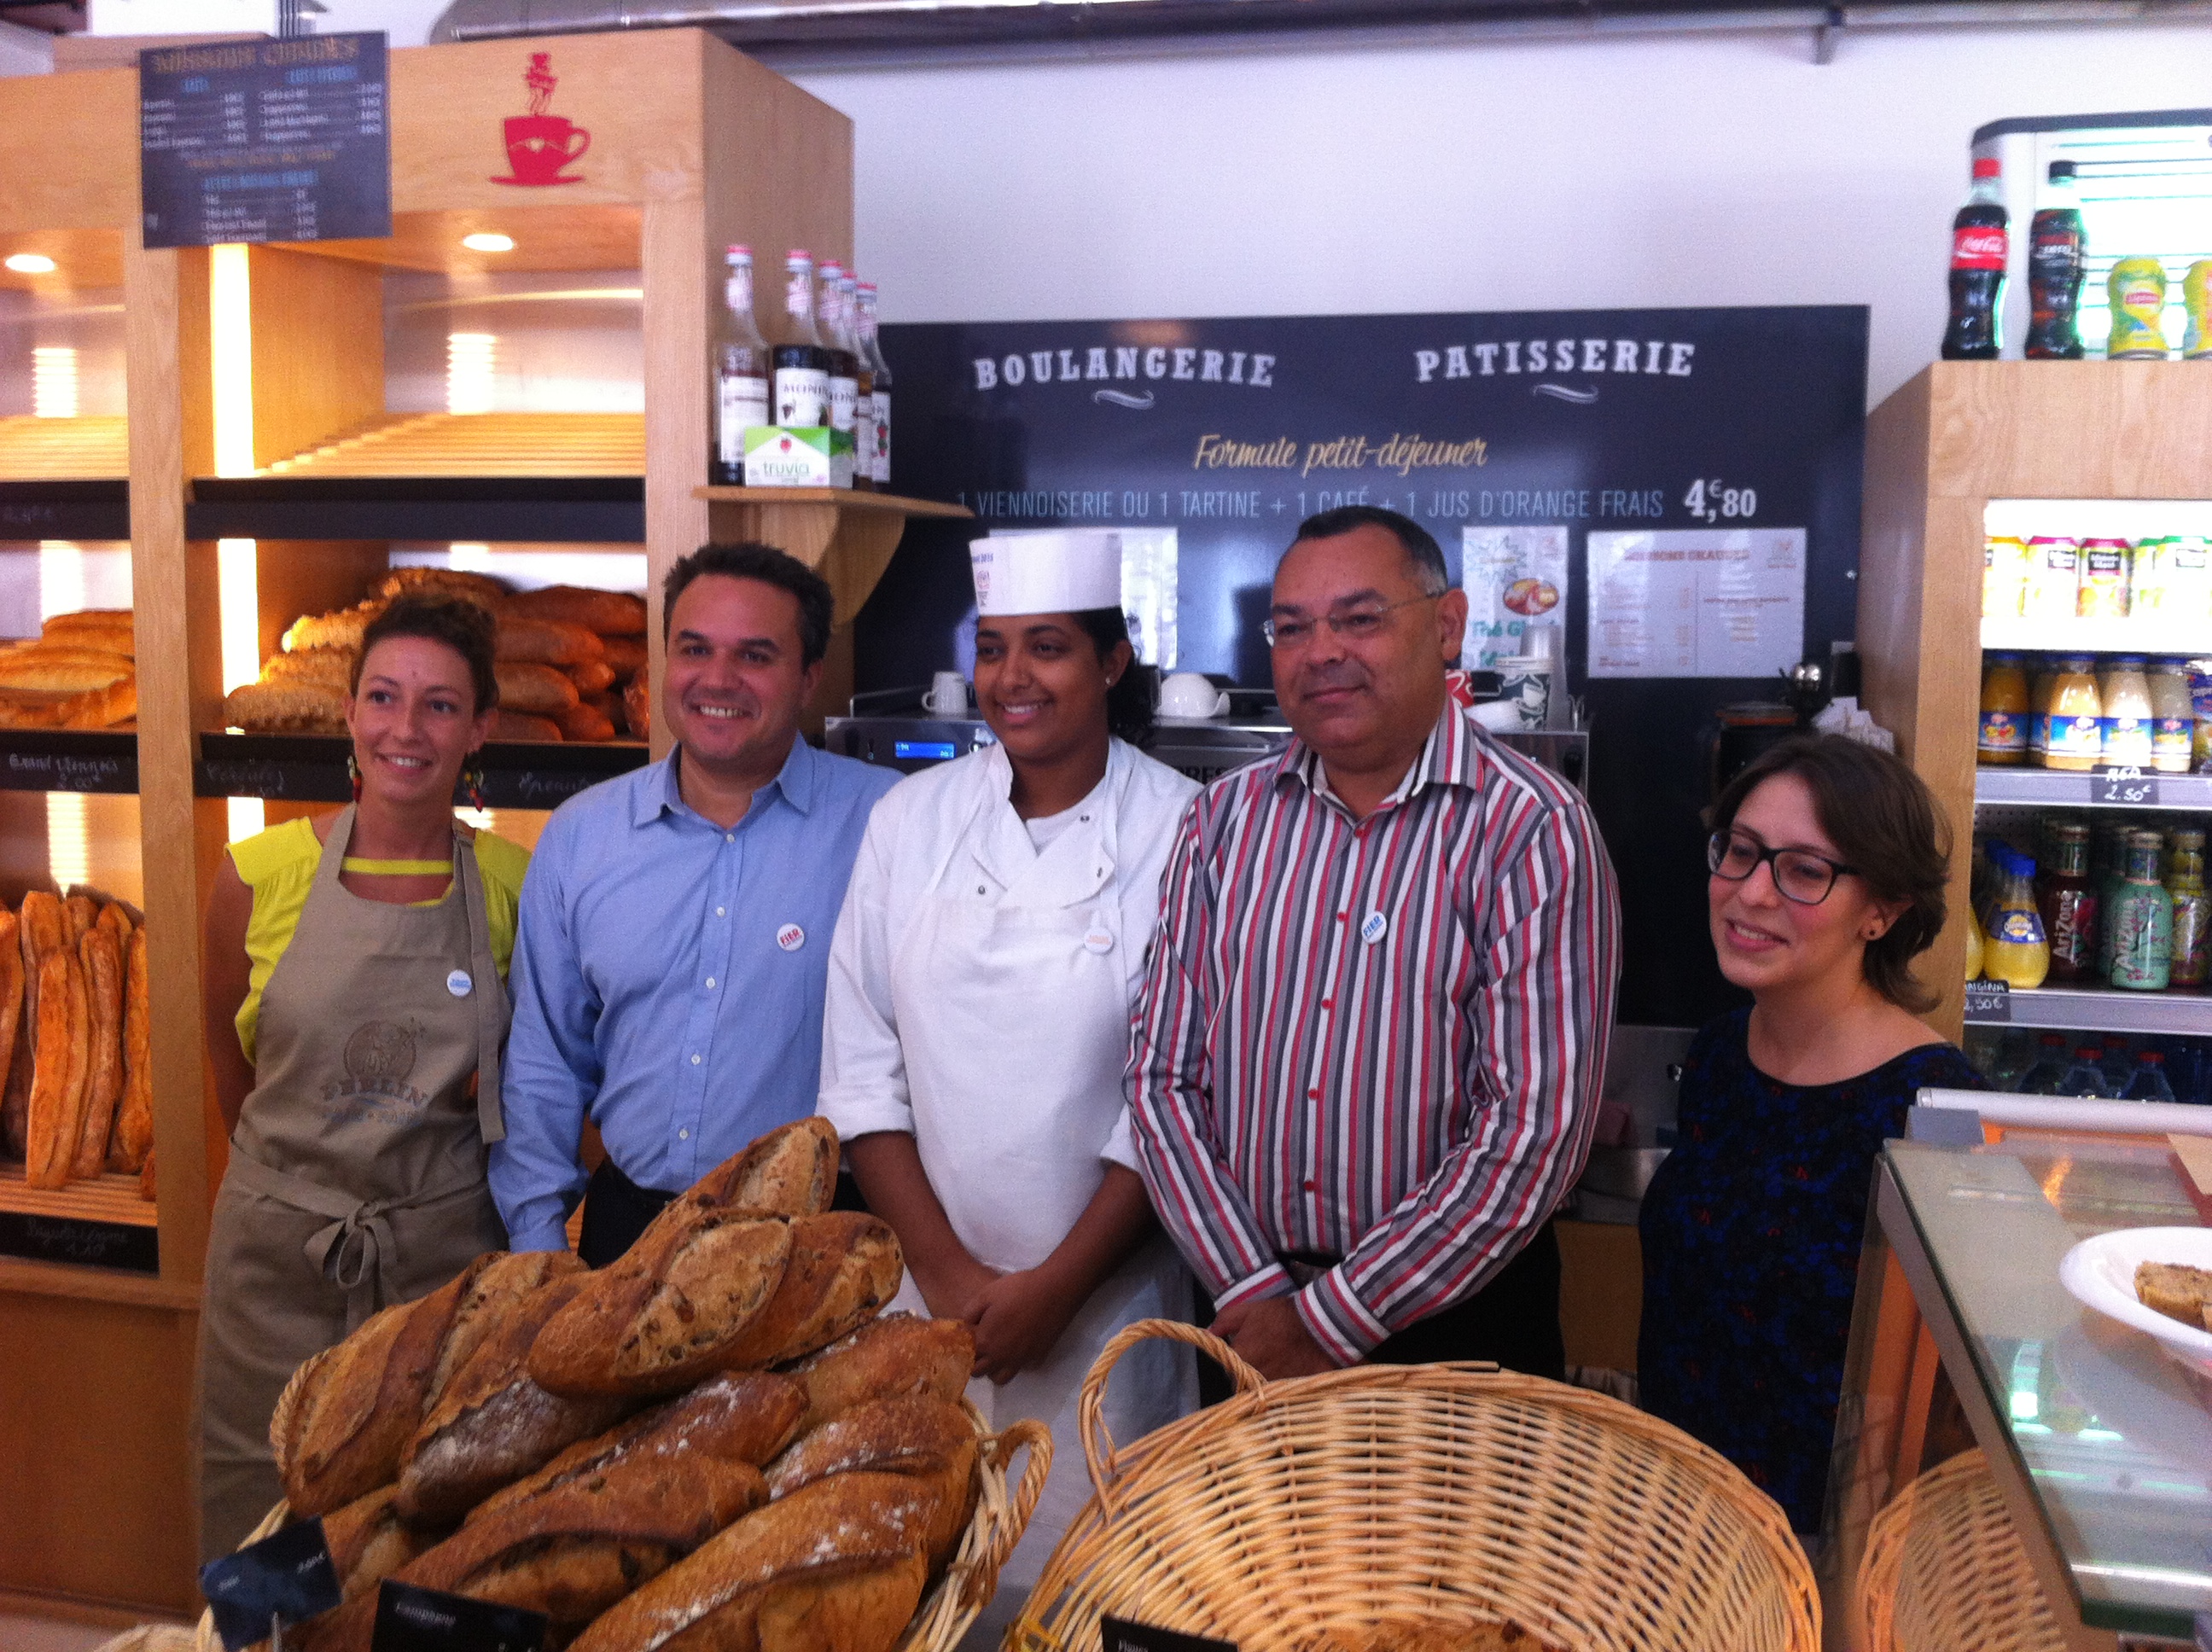 Semaine nationale de l'artisanat: Didier Robert apprend le métier de boulanger